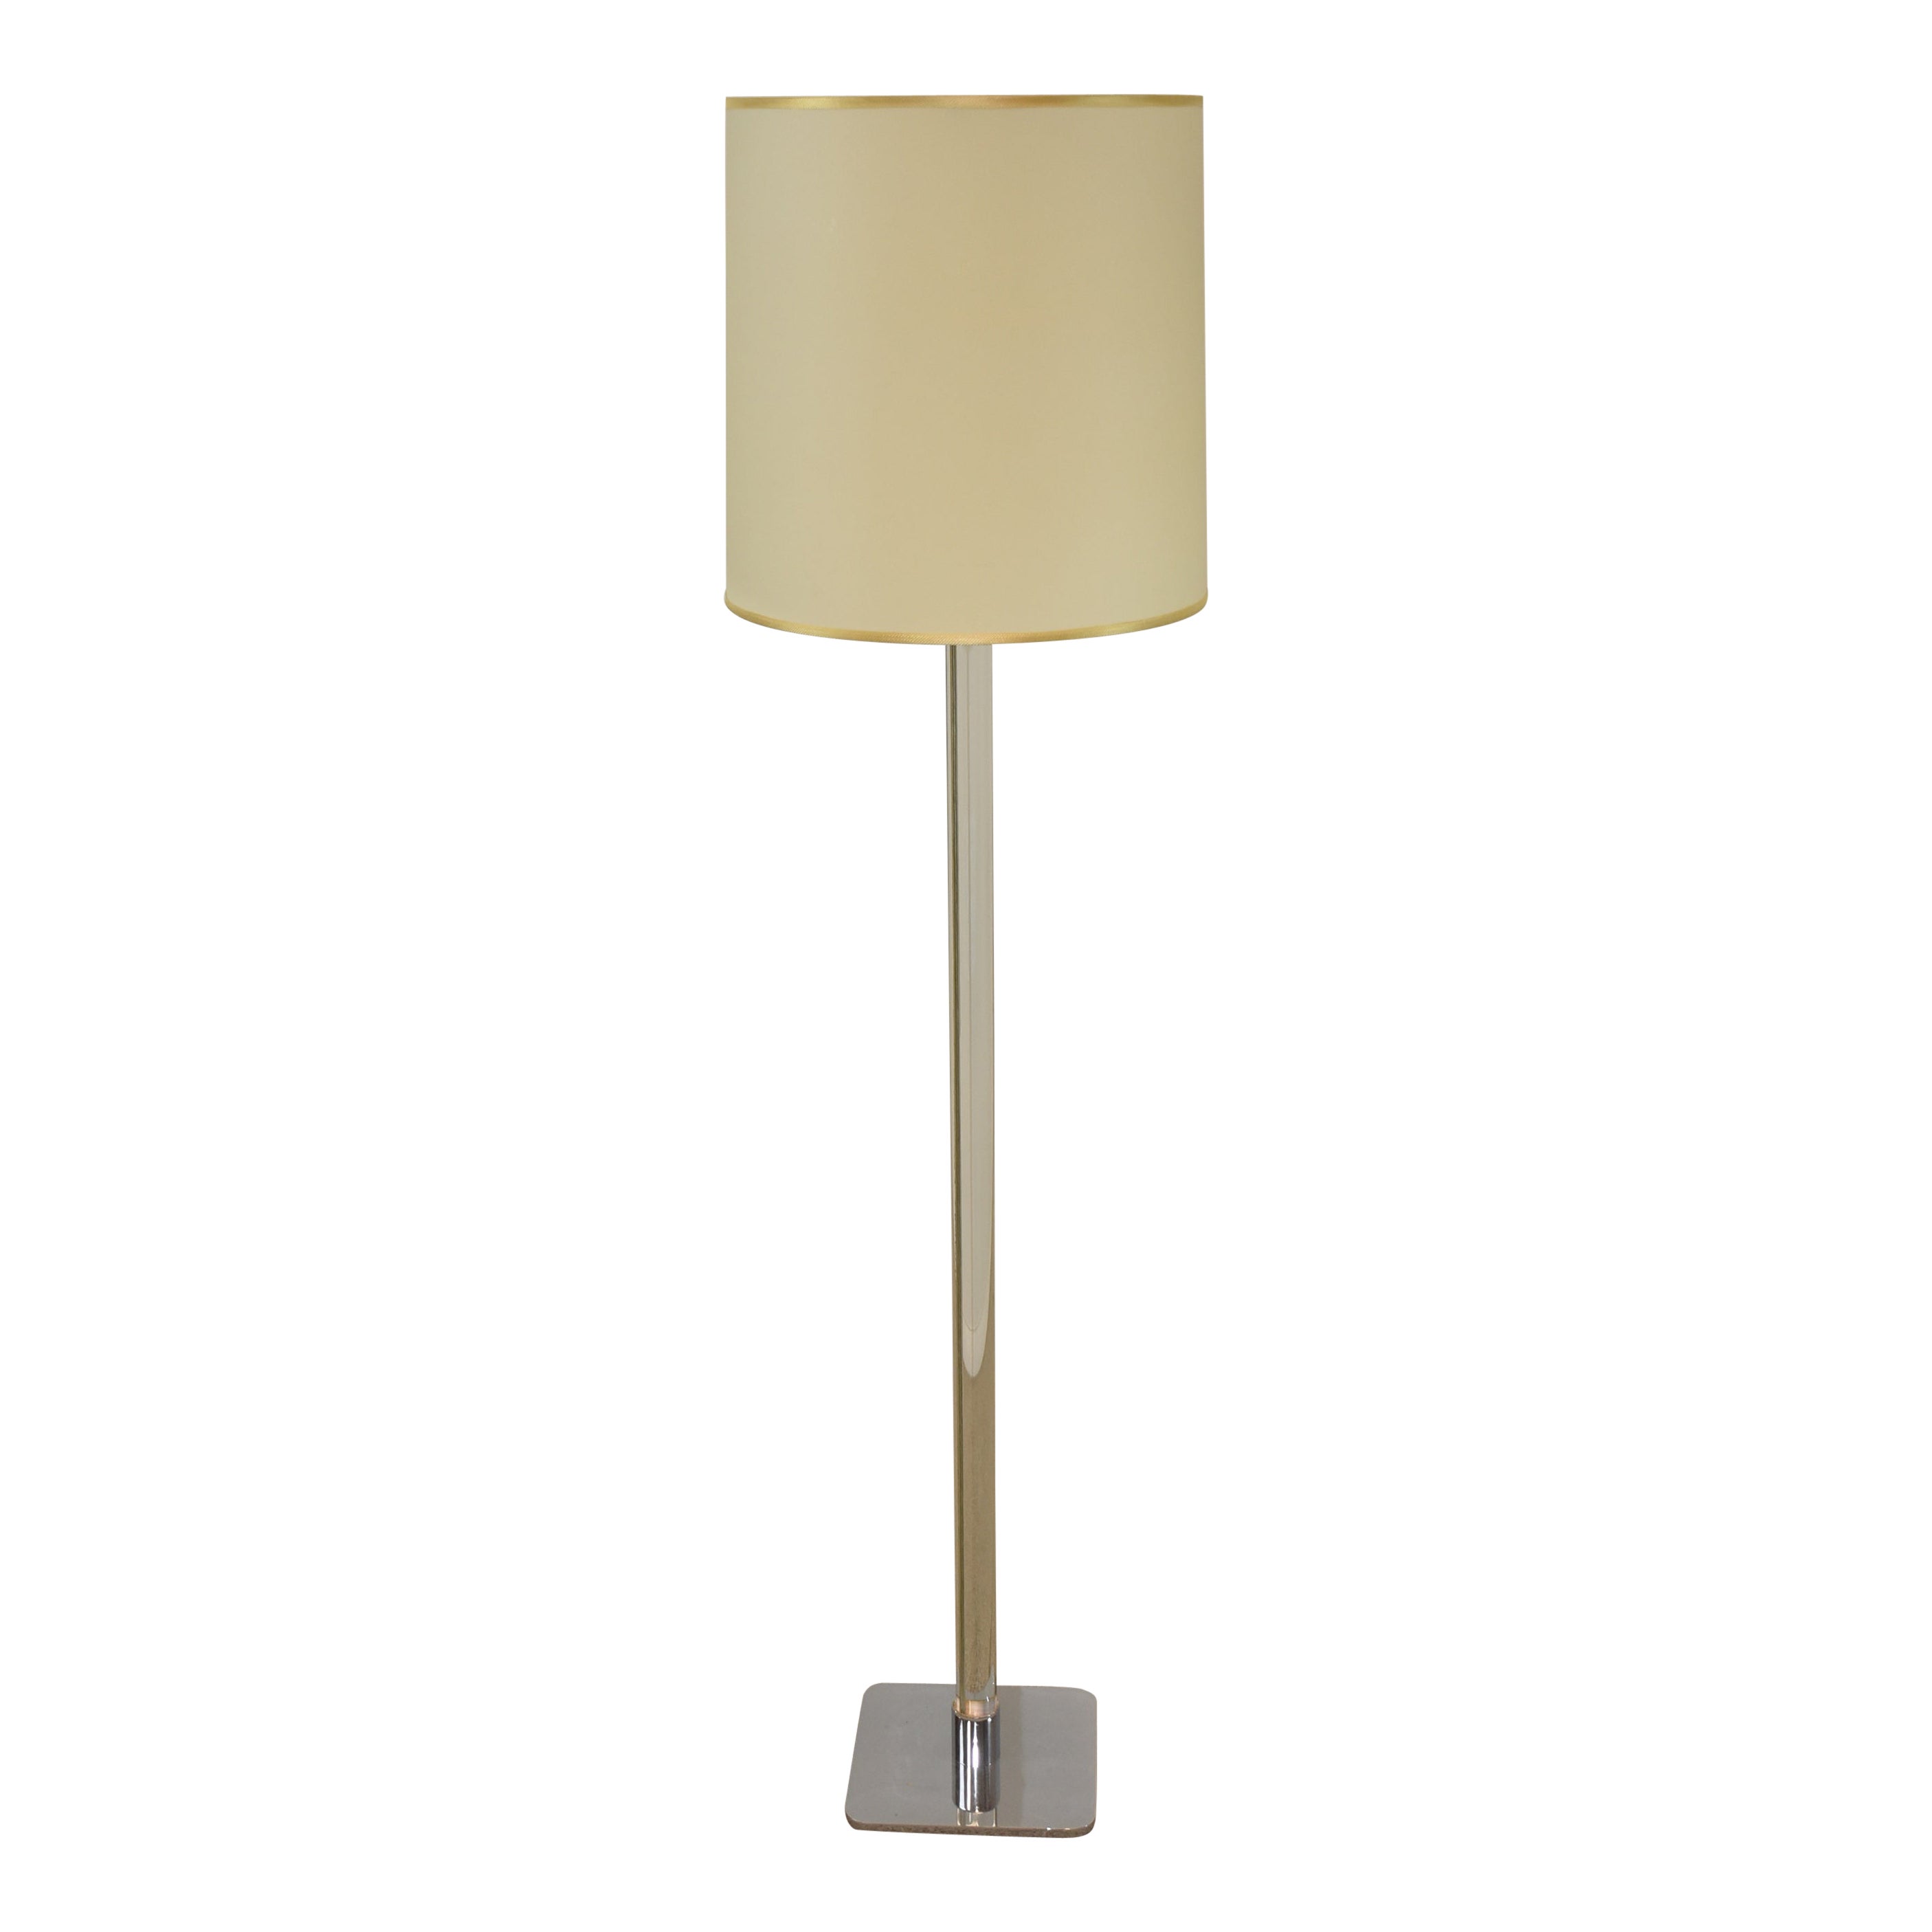 Acrylic and Chrome Modern Floor Lamp